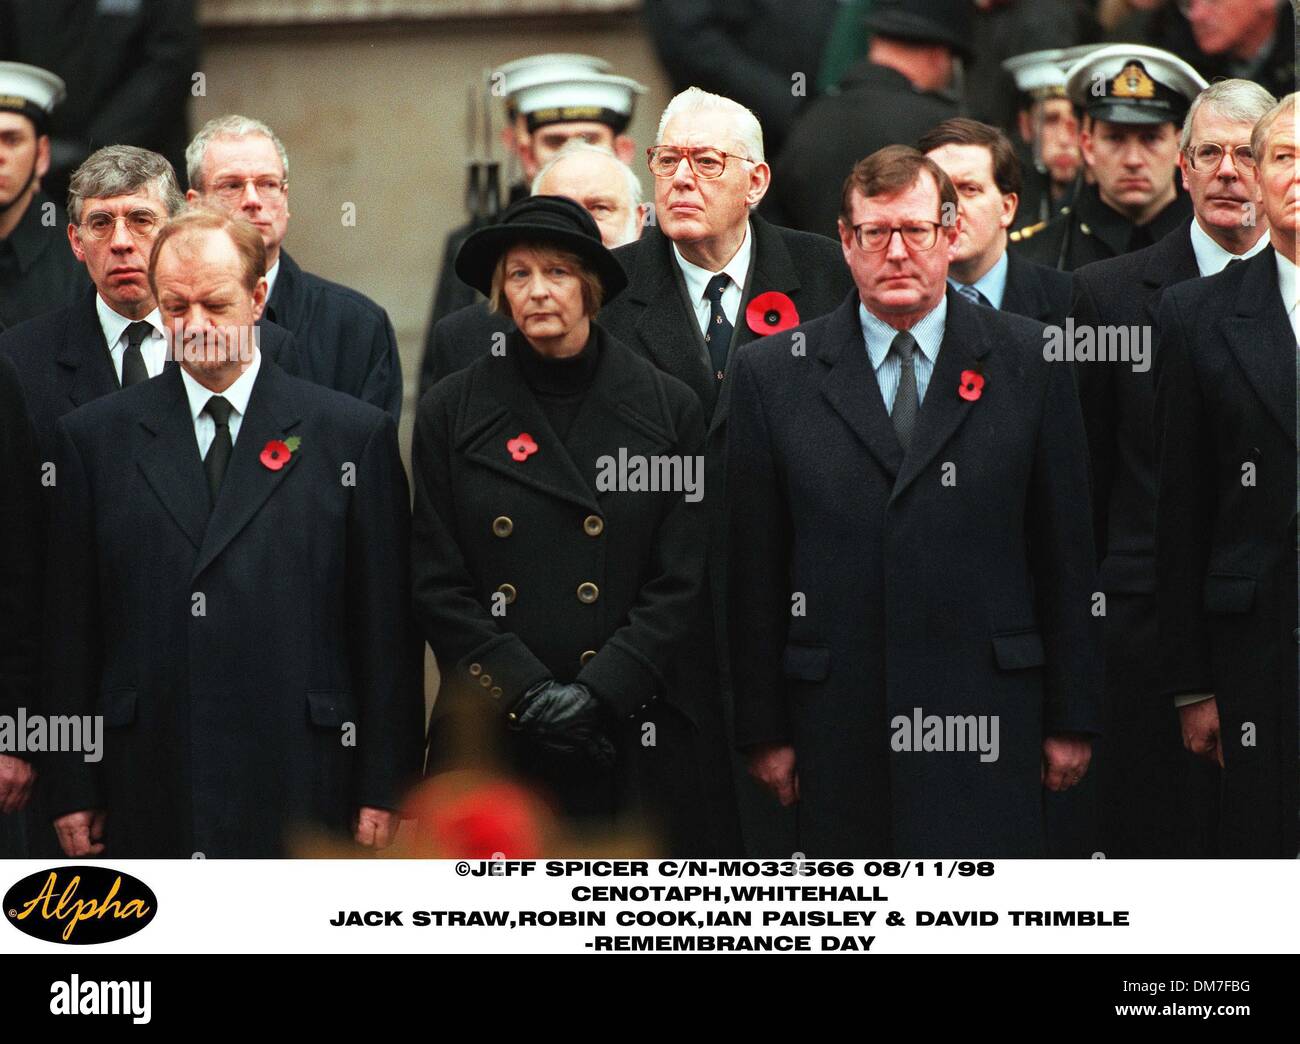 Nov. 8, 1998 - Londra, Gran Bretagna - 08/11/98 Il cenotafio,WHITEHALL.Jack STRAW,Robin COOK,Ian Paisley & David Trimble.-Giorno del Ricordo(Immagine di credito: © Globo foto/ZUMAPRESS.com) Foto Stock